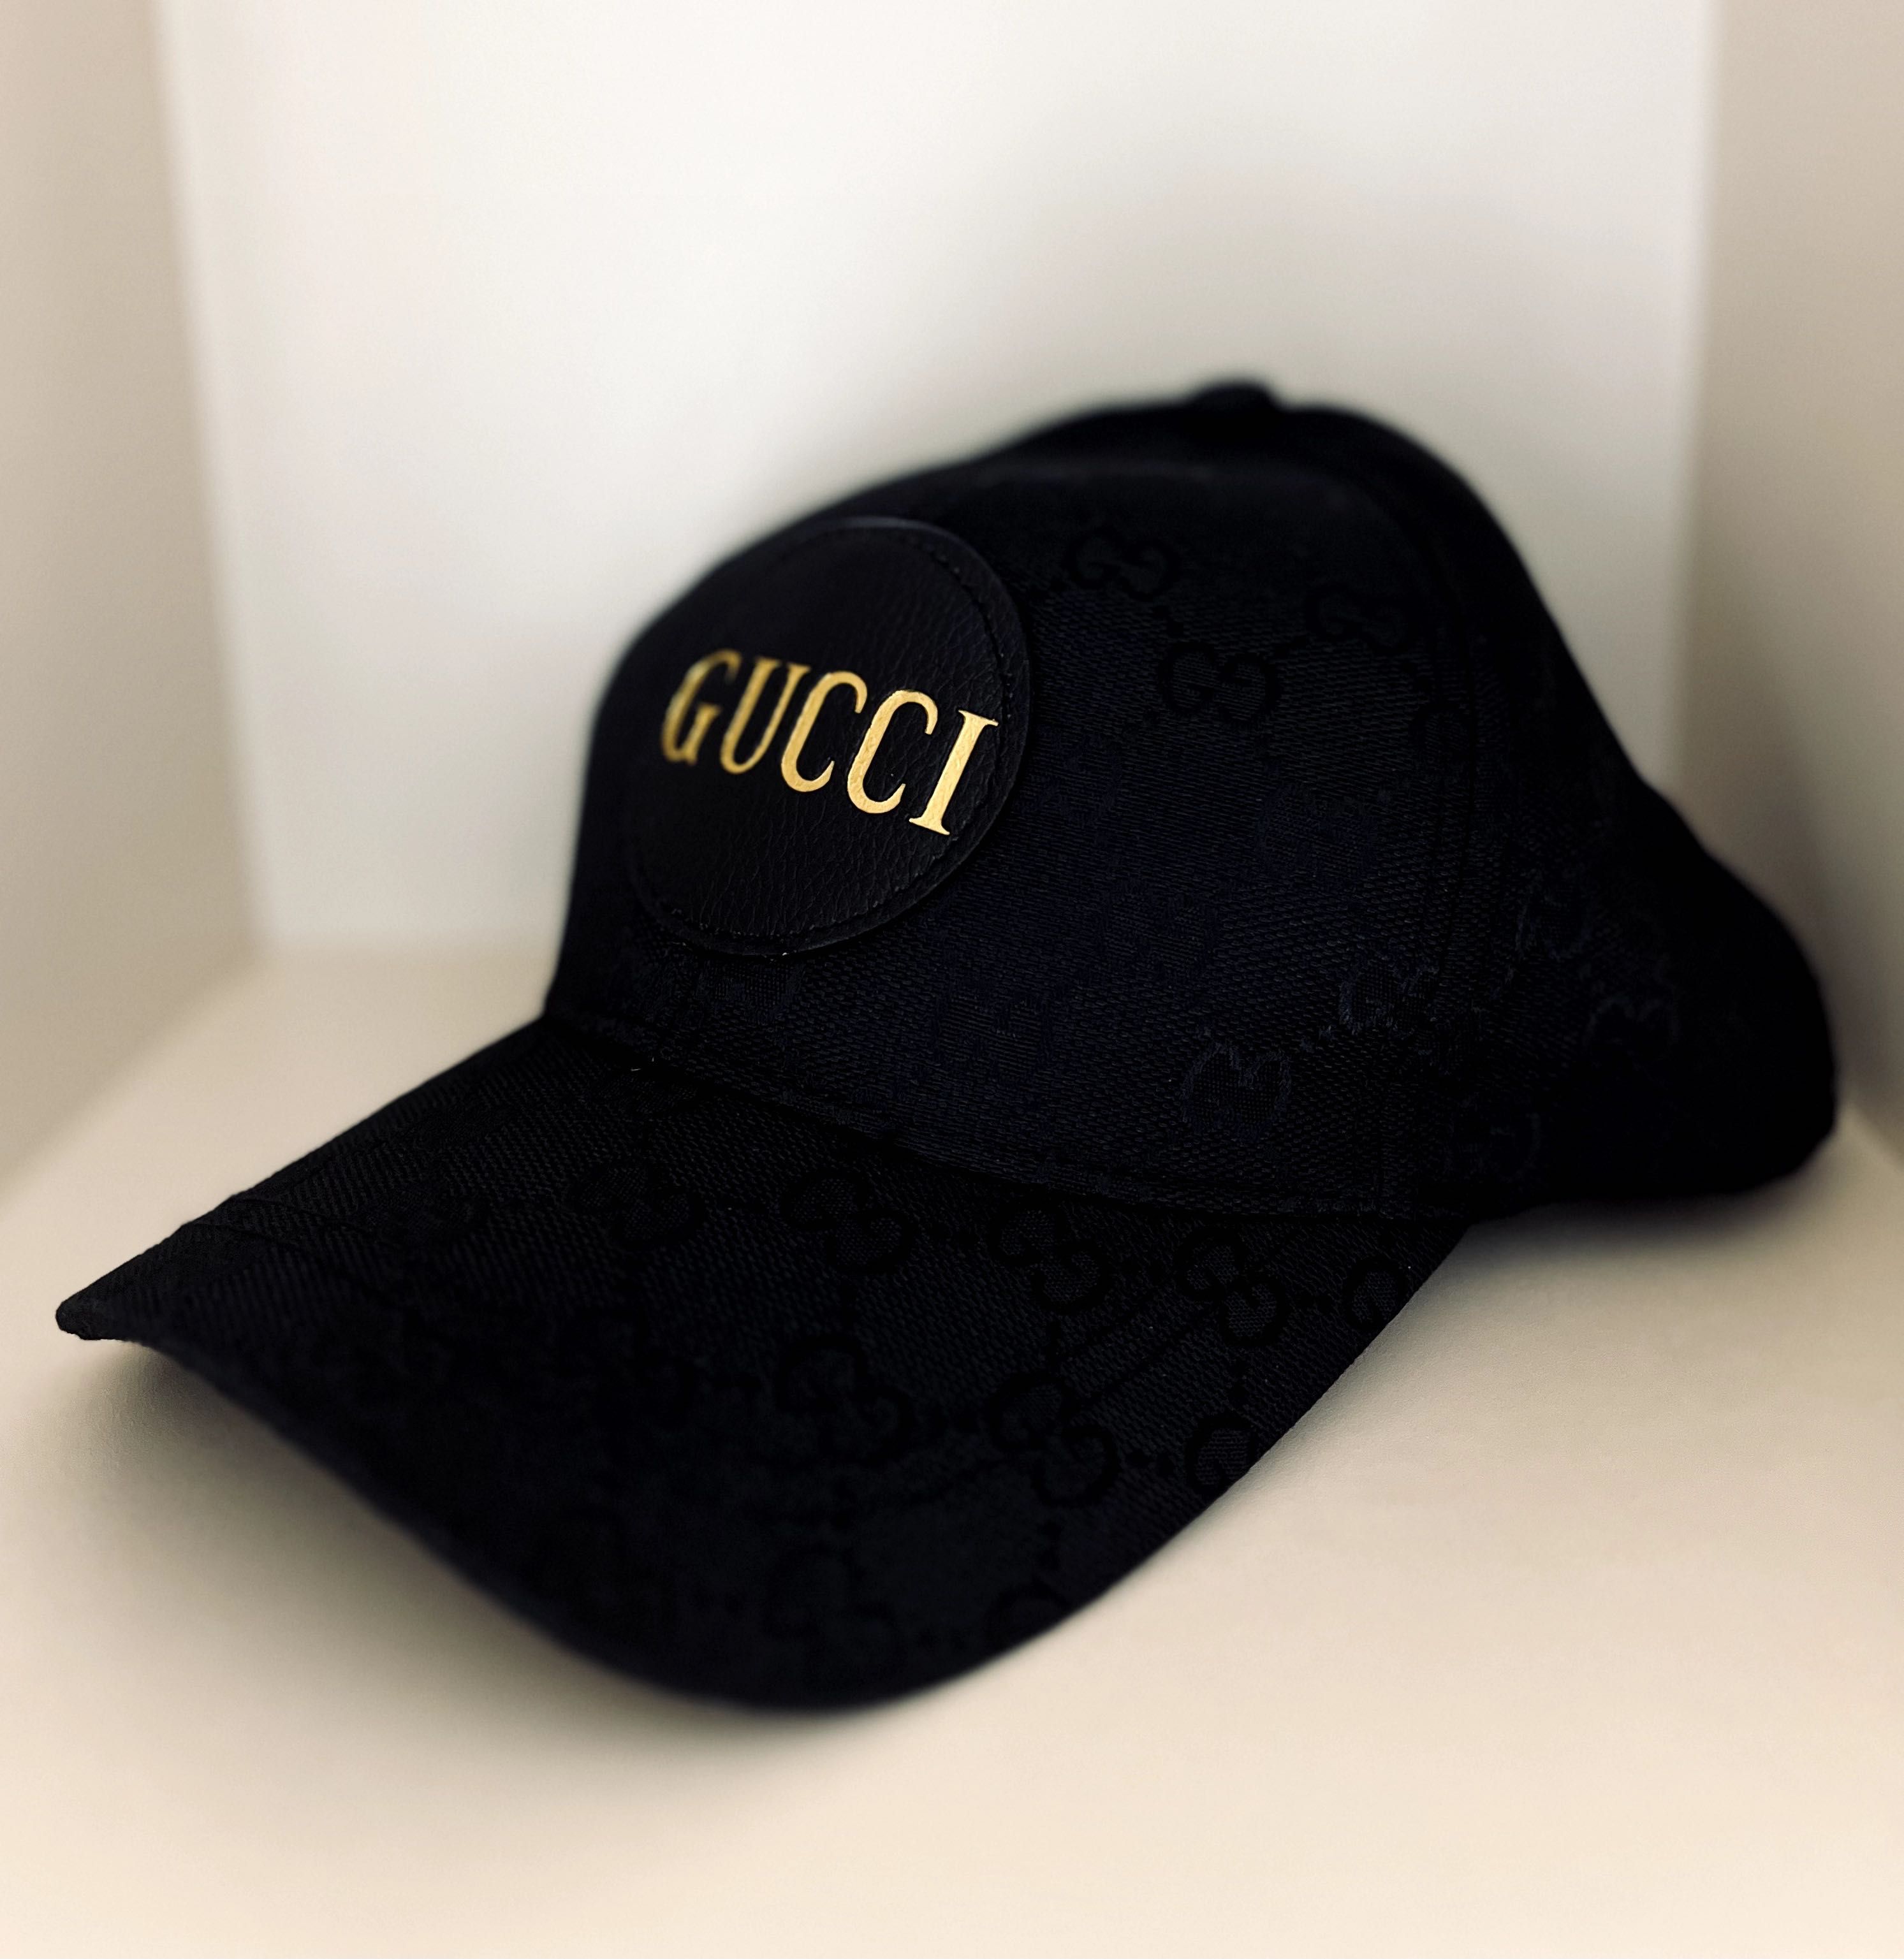 Новая мужская оригинальная кепка Гуччи летняя ( Gucci кепка оригинал )